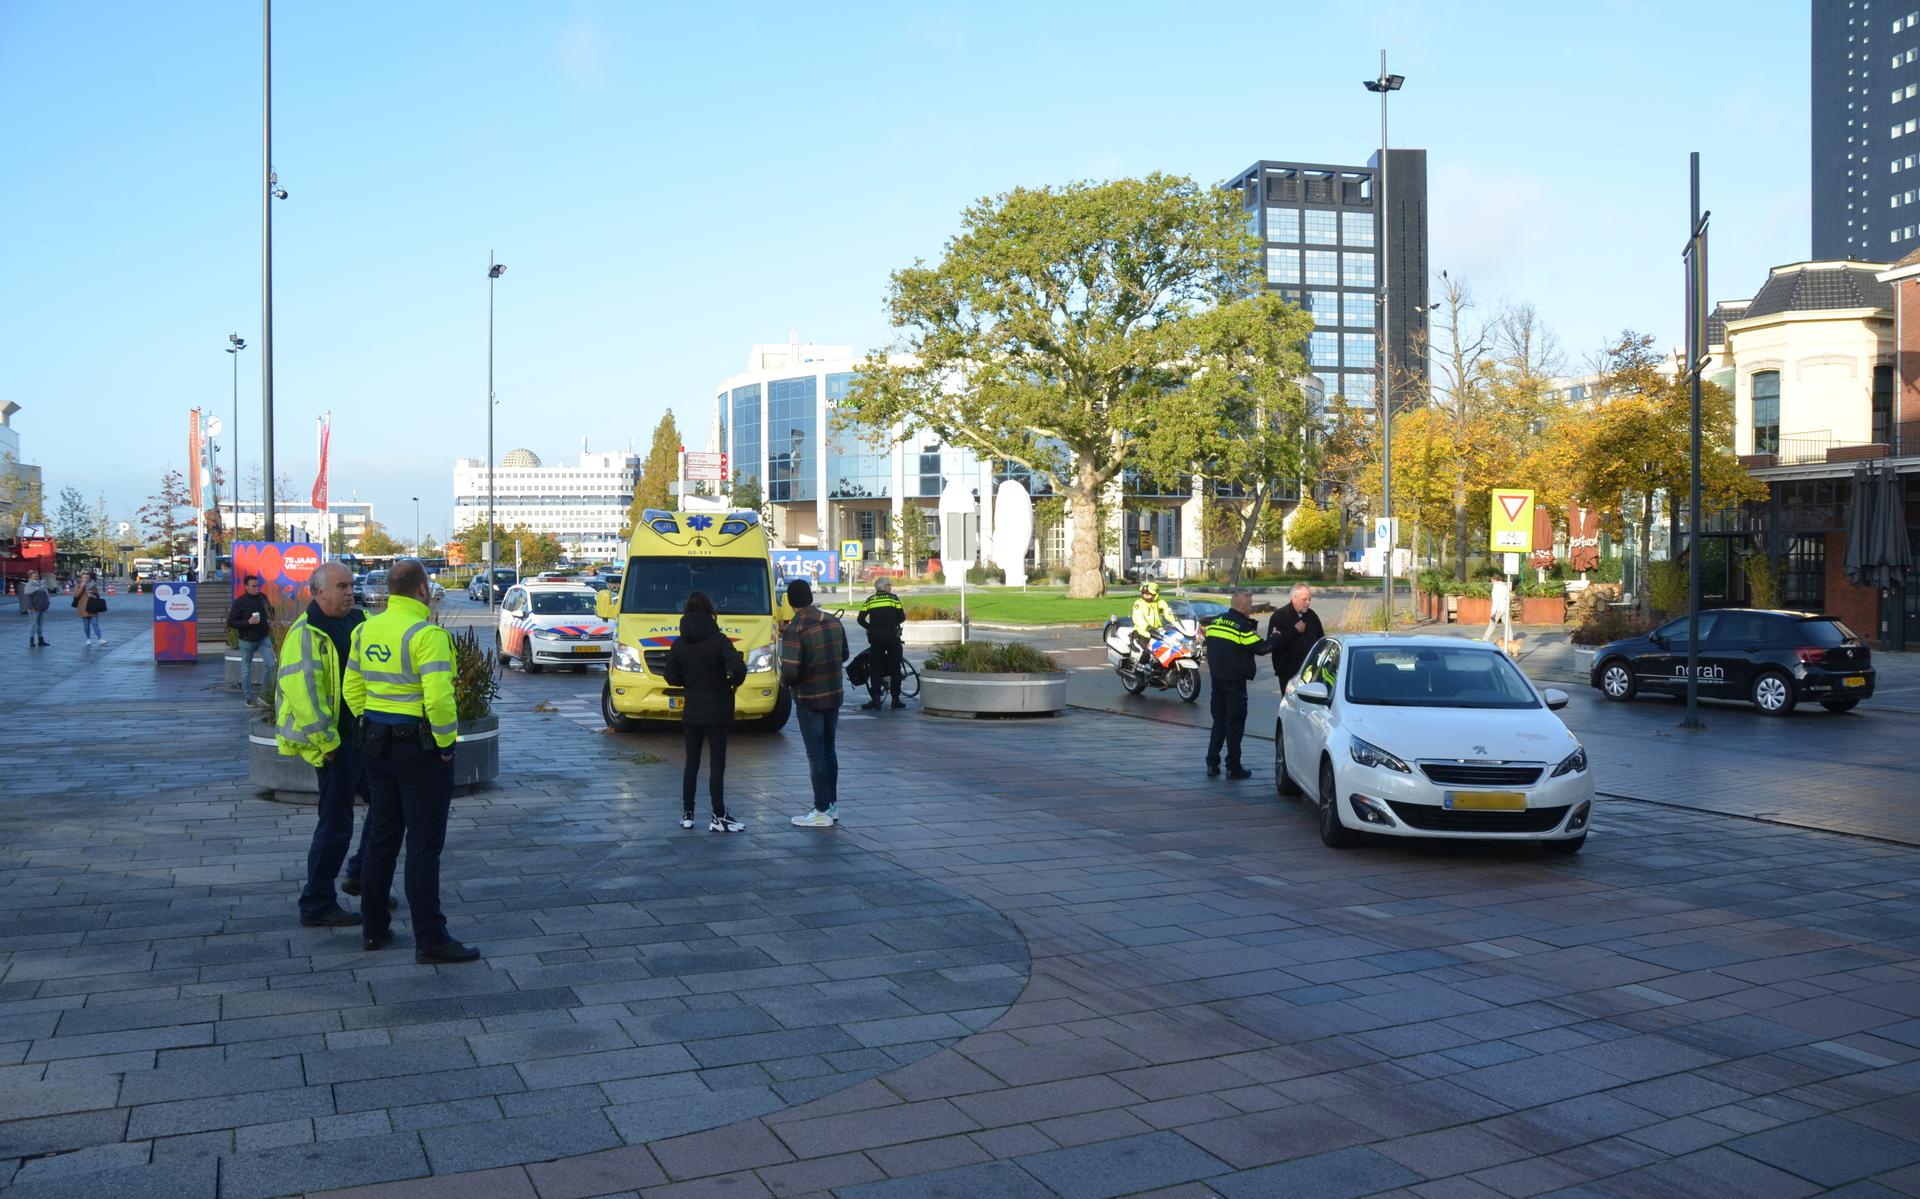 Al sinds het nieuwe Stationsplein eind 2017 geopend werd, is er discussie over de verkeersveiligheid.